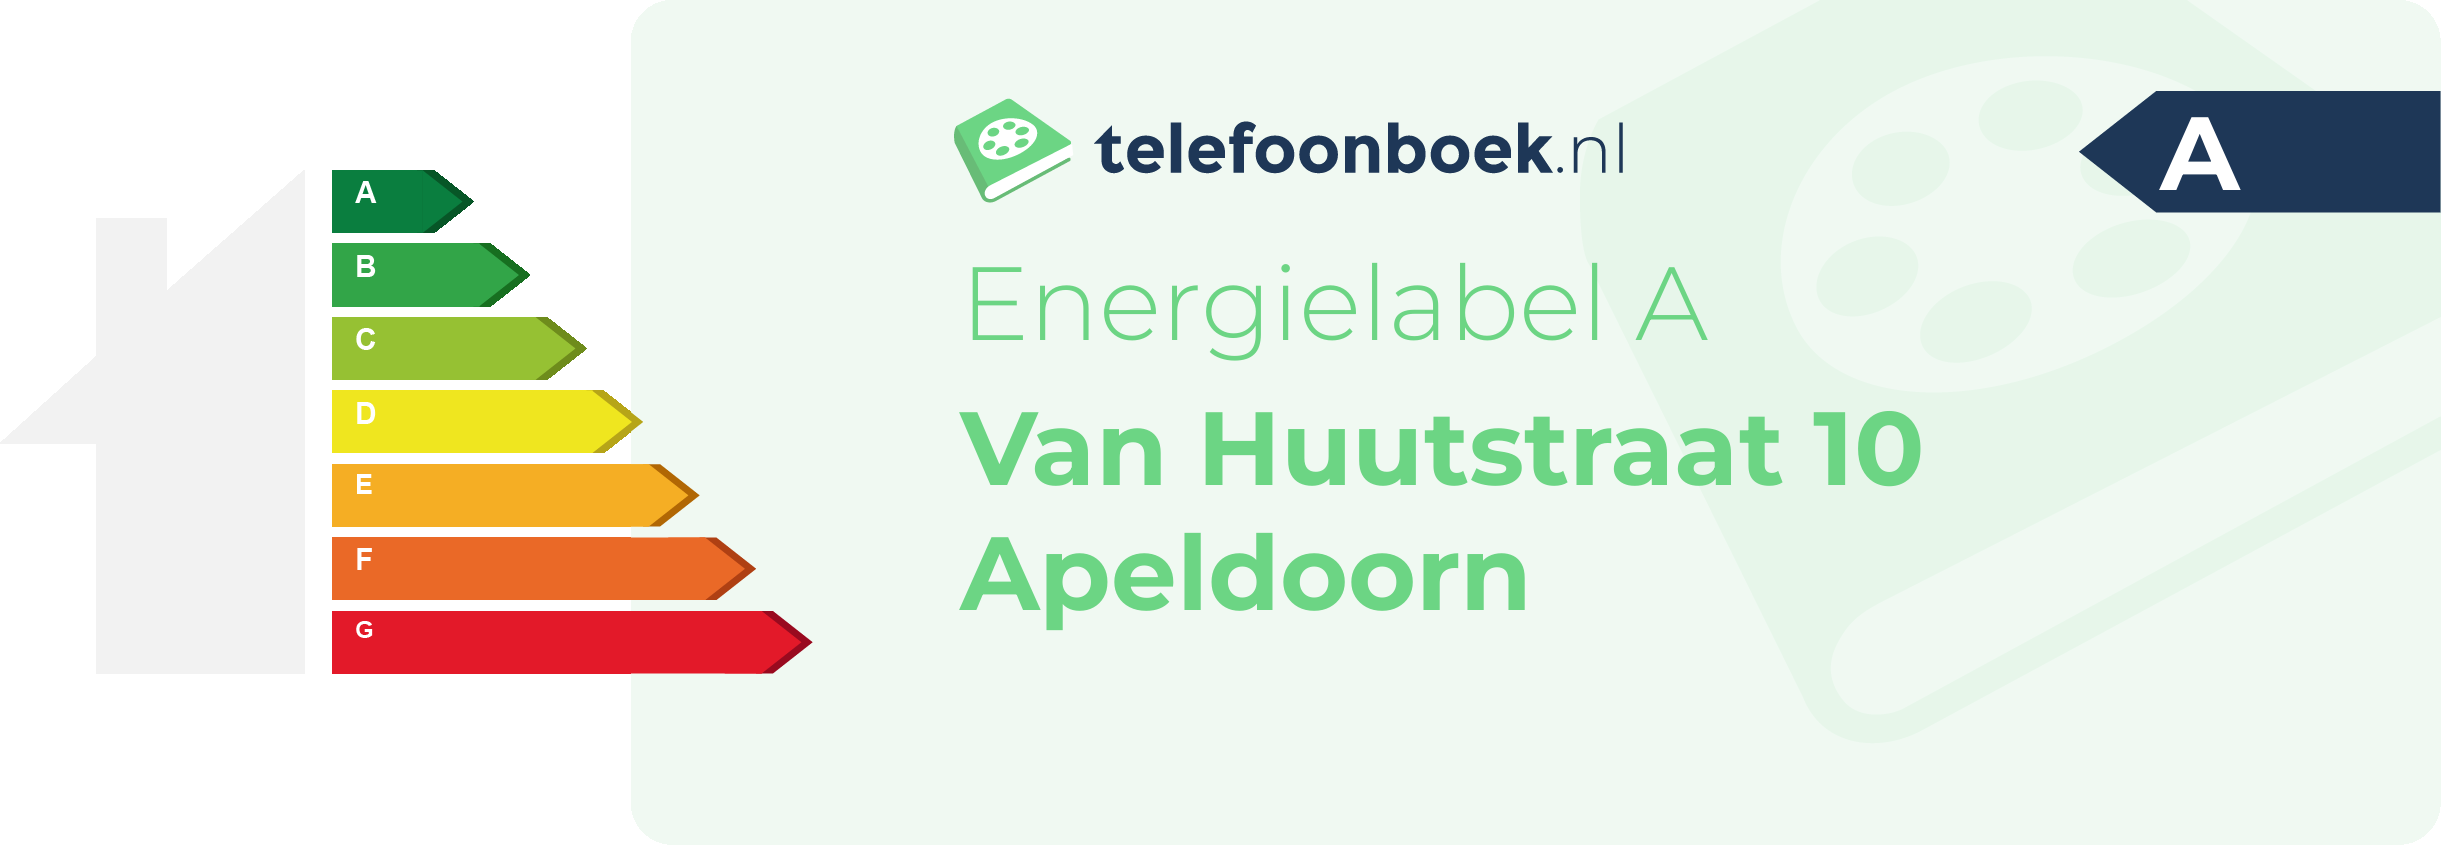 Energielabel Van Huutstraat 10 Apeldoorn